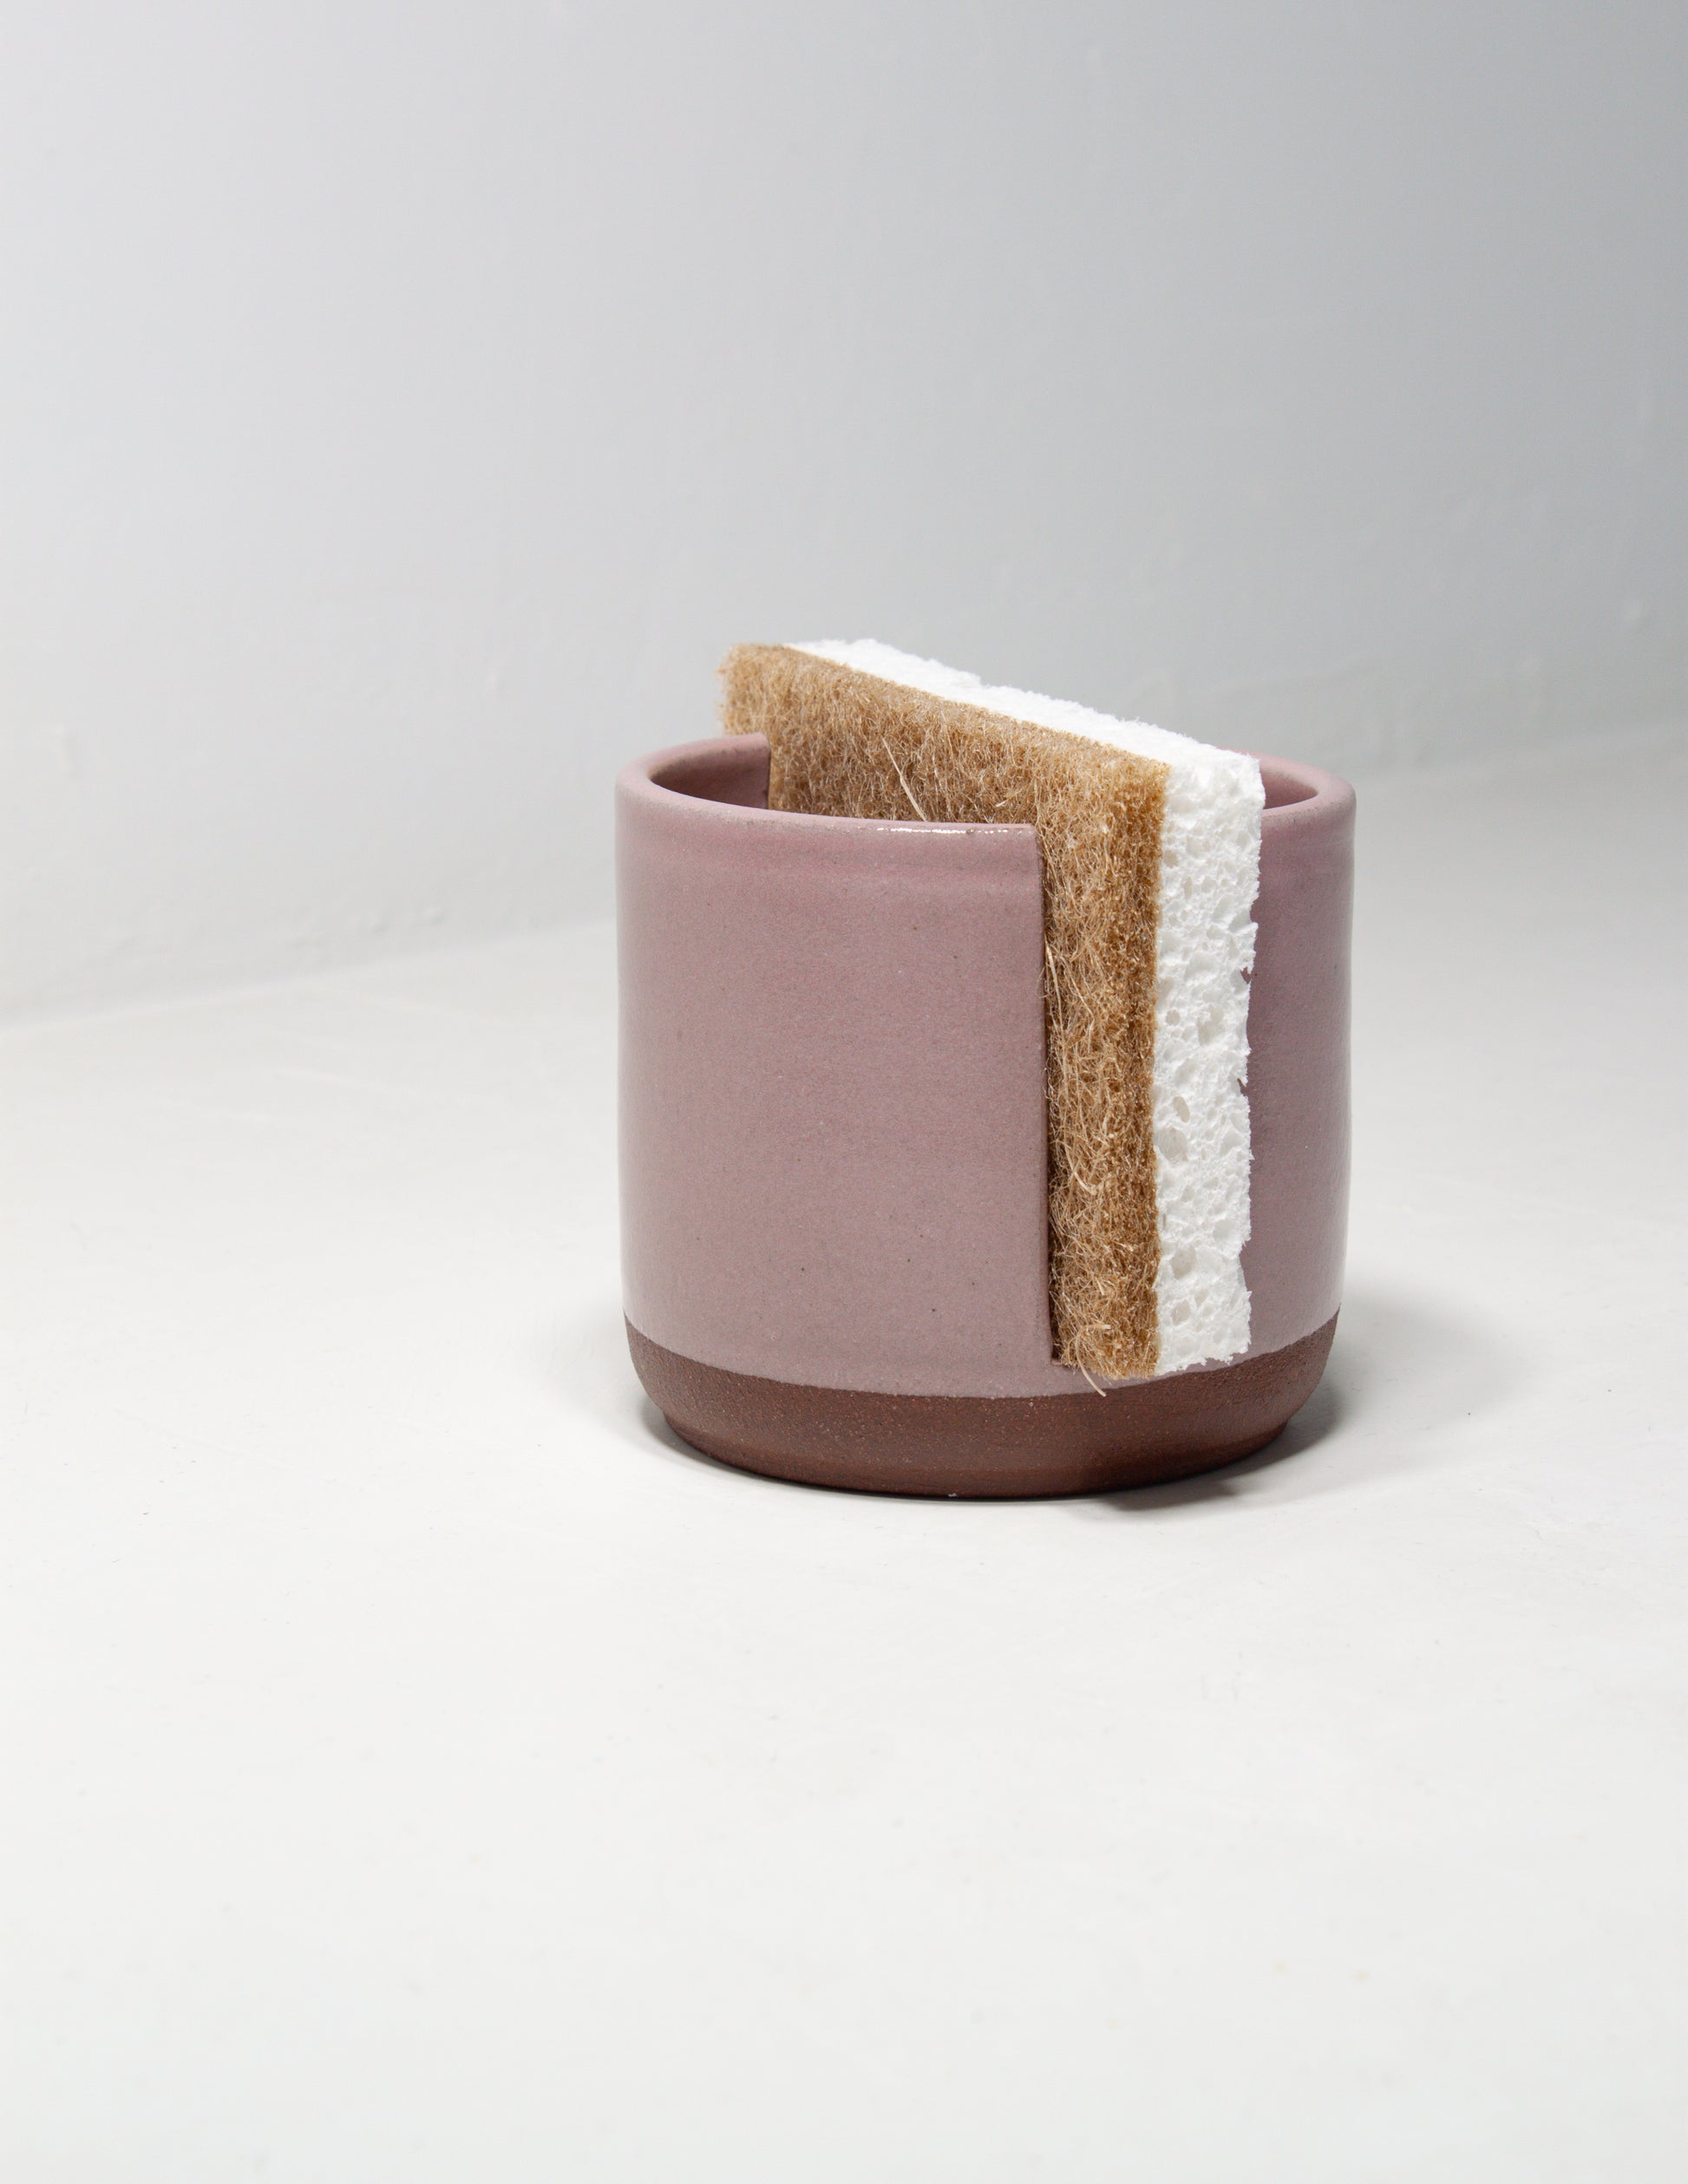 Pink handmade ceramic sponge holder crafted by skilled artisans at Black Oak Art